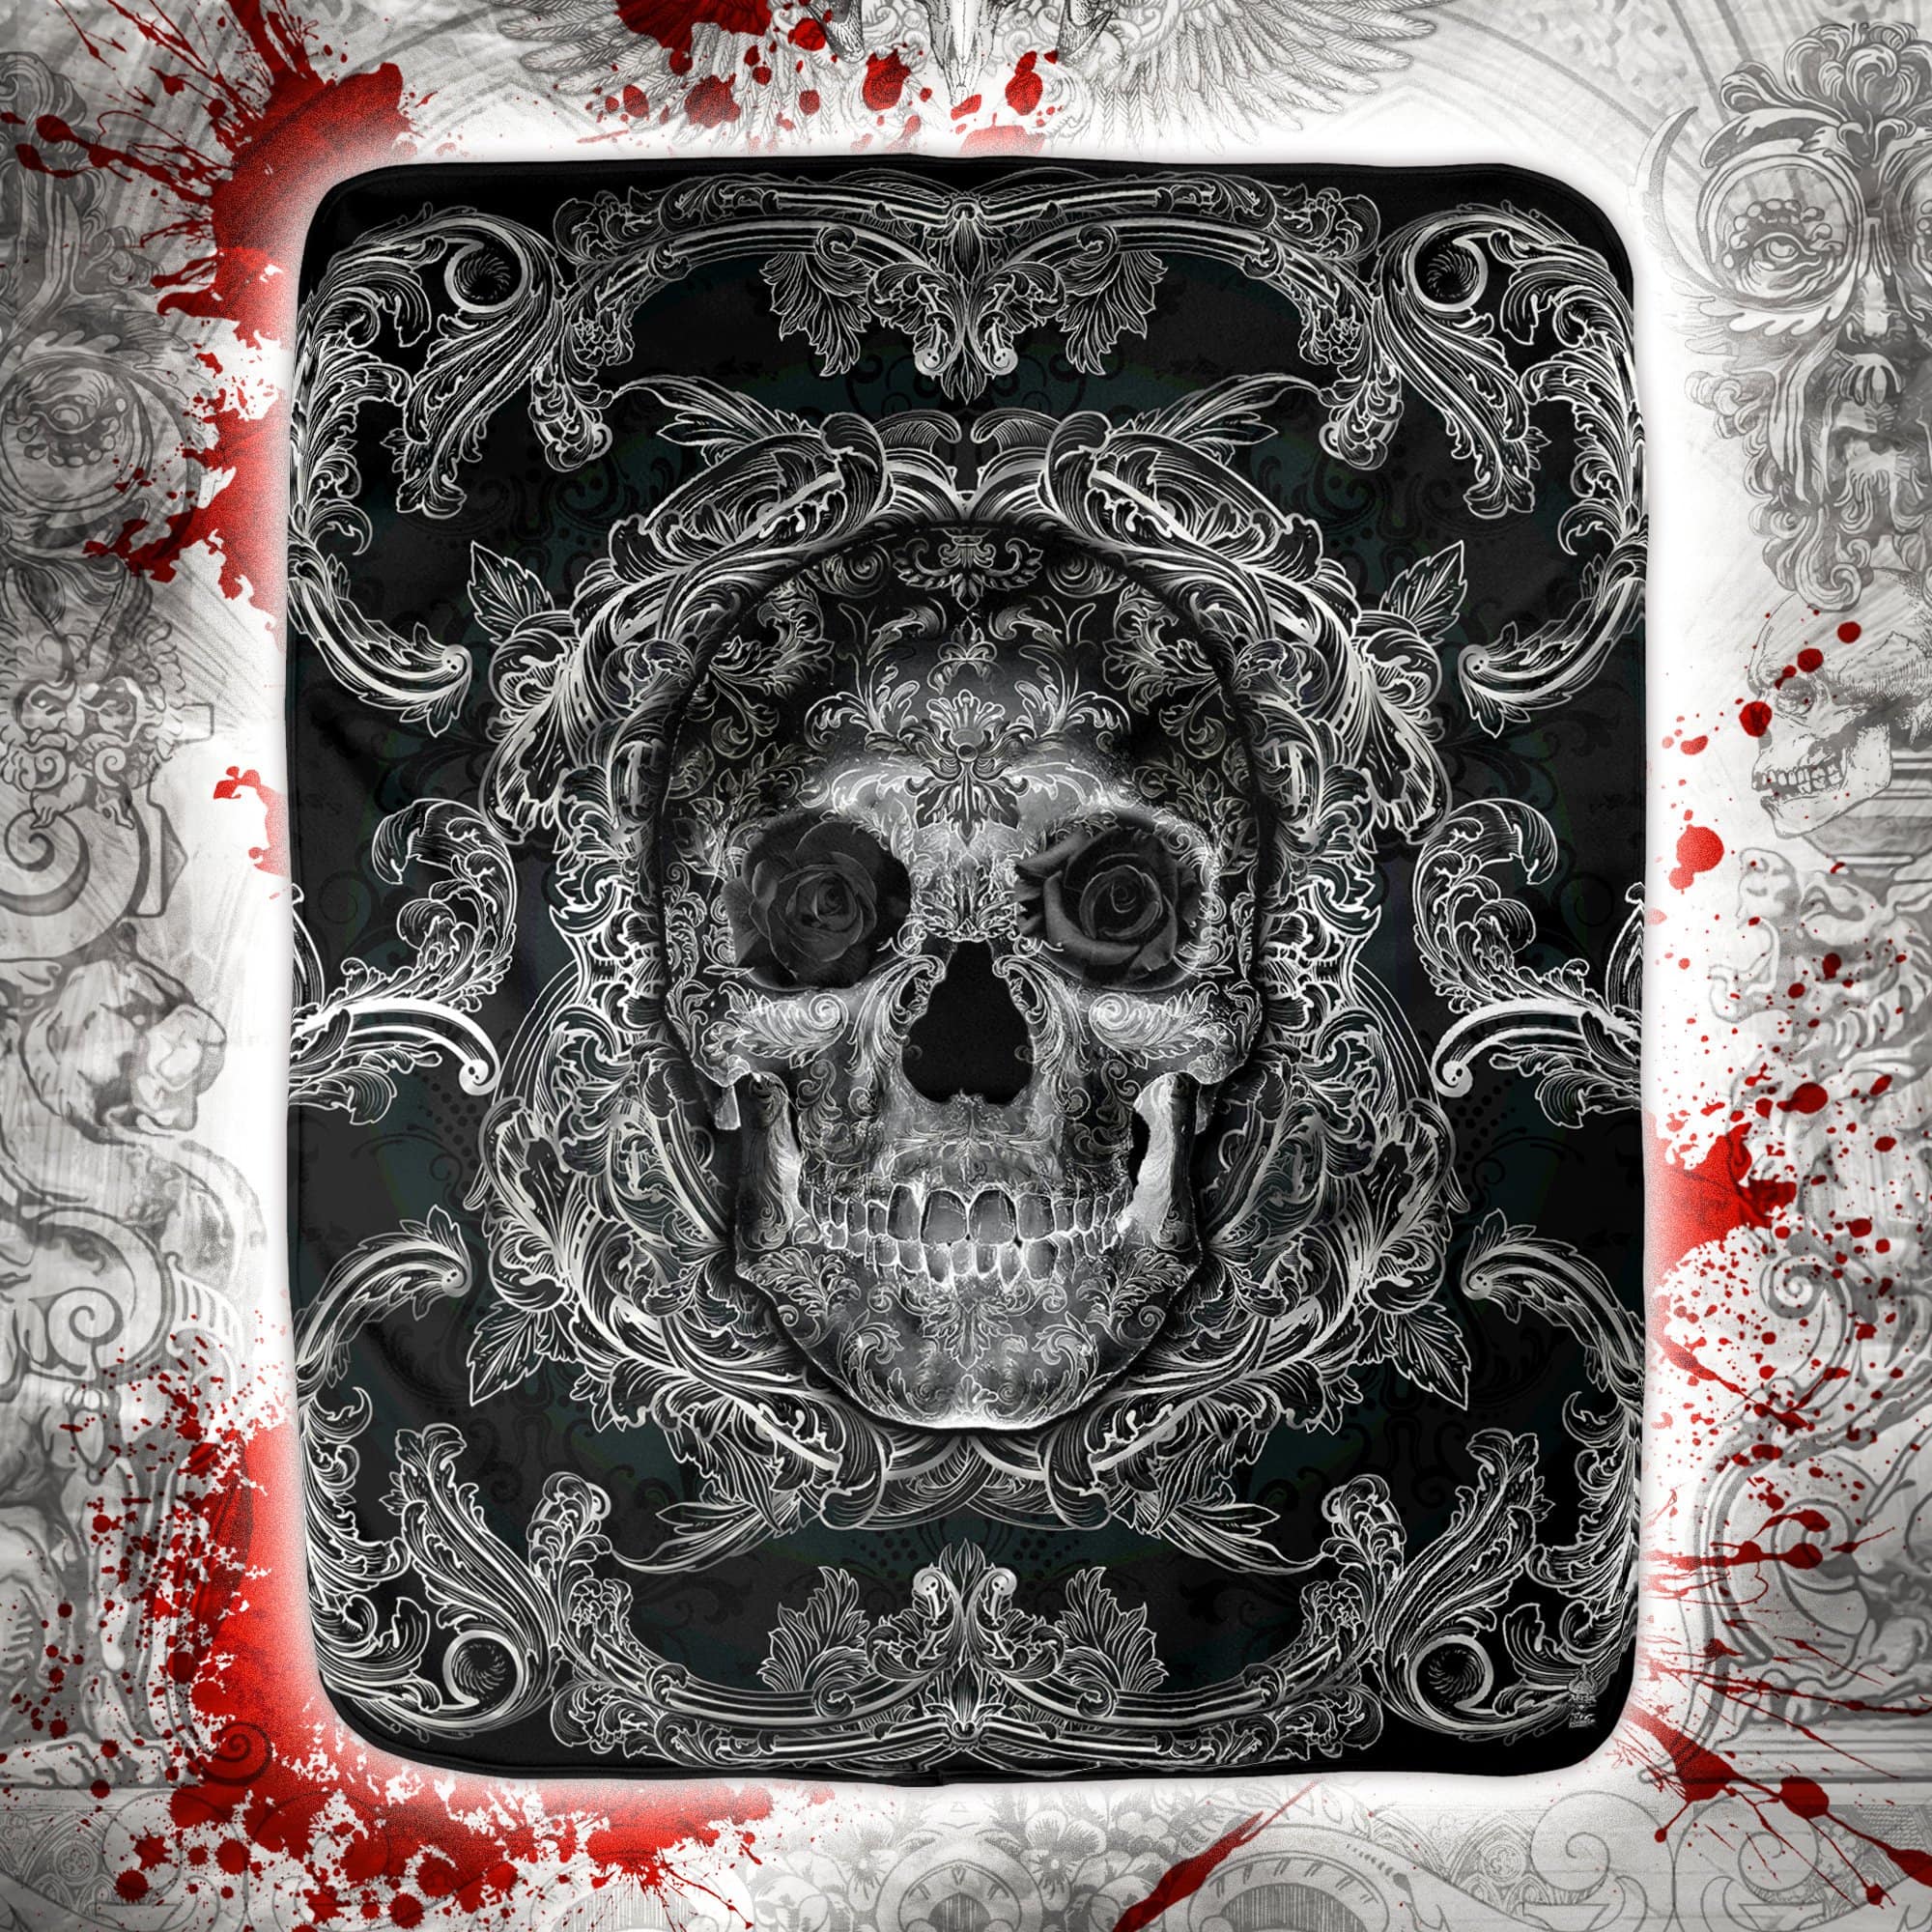 Skull Throw Fleece Blanket, Macabre Art, Gothic Decor, Alternative Art Gift - Dark, Black - Abysm Internal